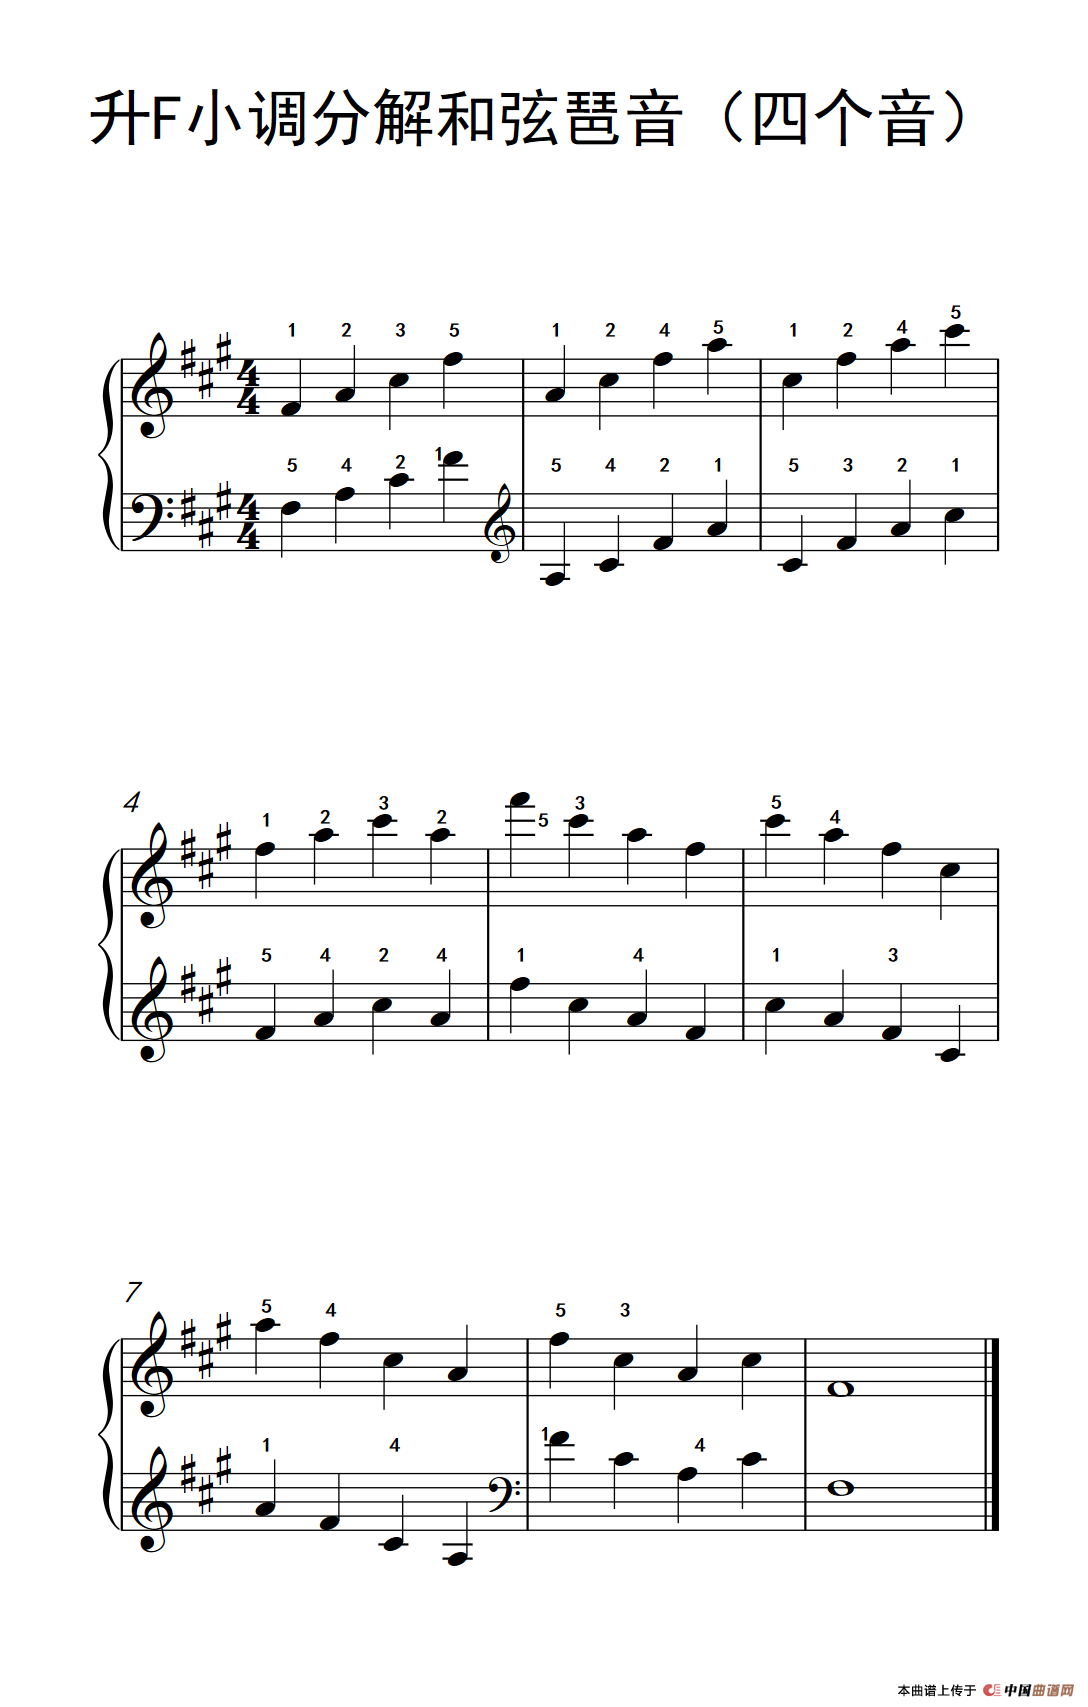 《升F小调分解和弦琶音》钢琴曲谱图分享